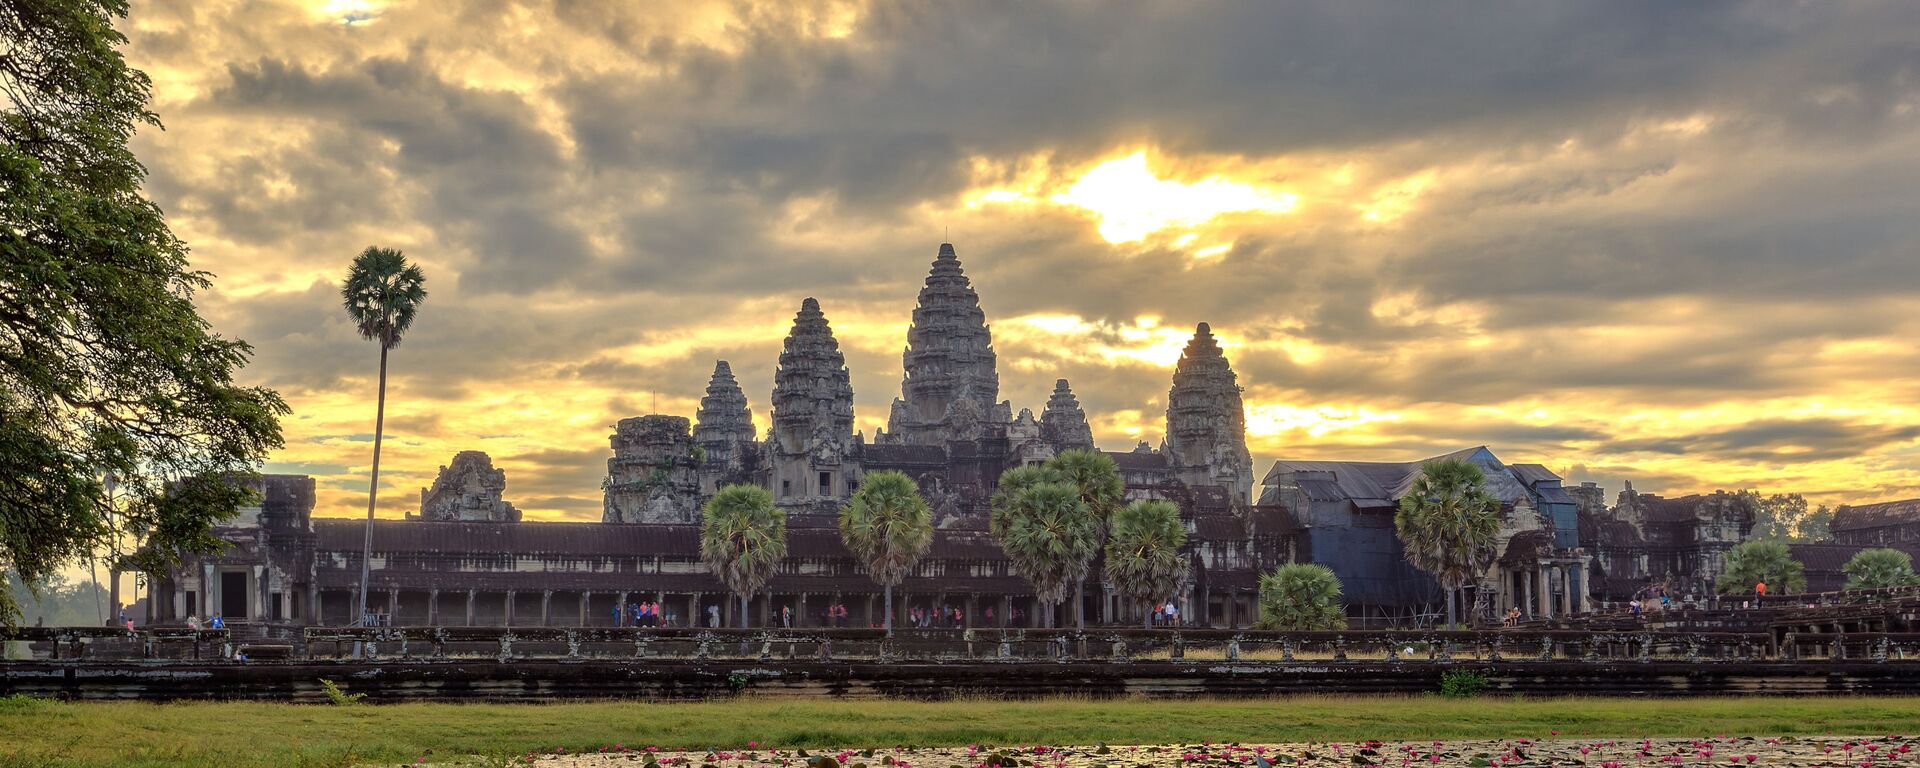 Ngôi đền cổ nổi tiếng thế giới Angkor Wat. - Sputnik Việt Nam, 1920, 26.05.2021